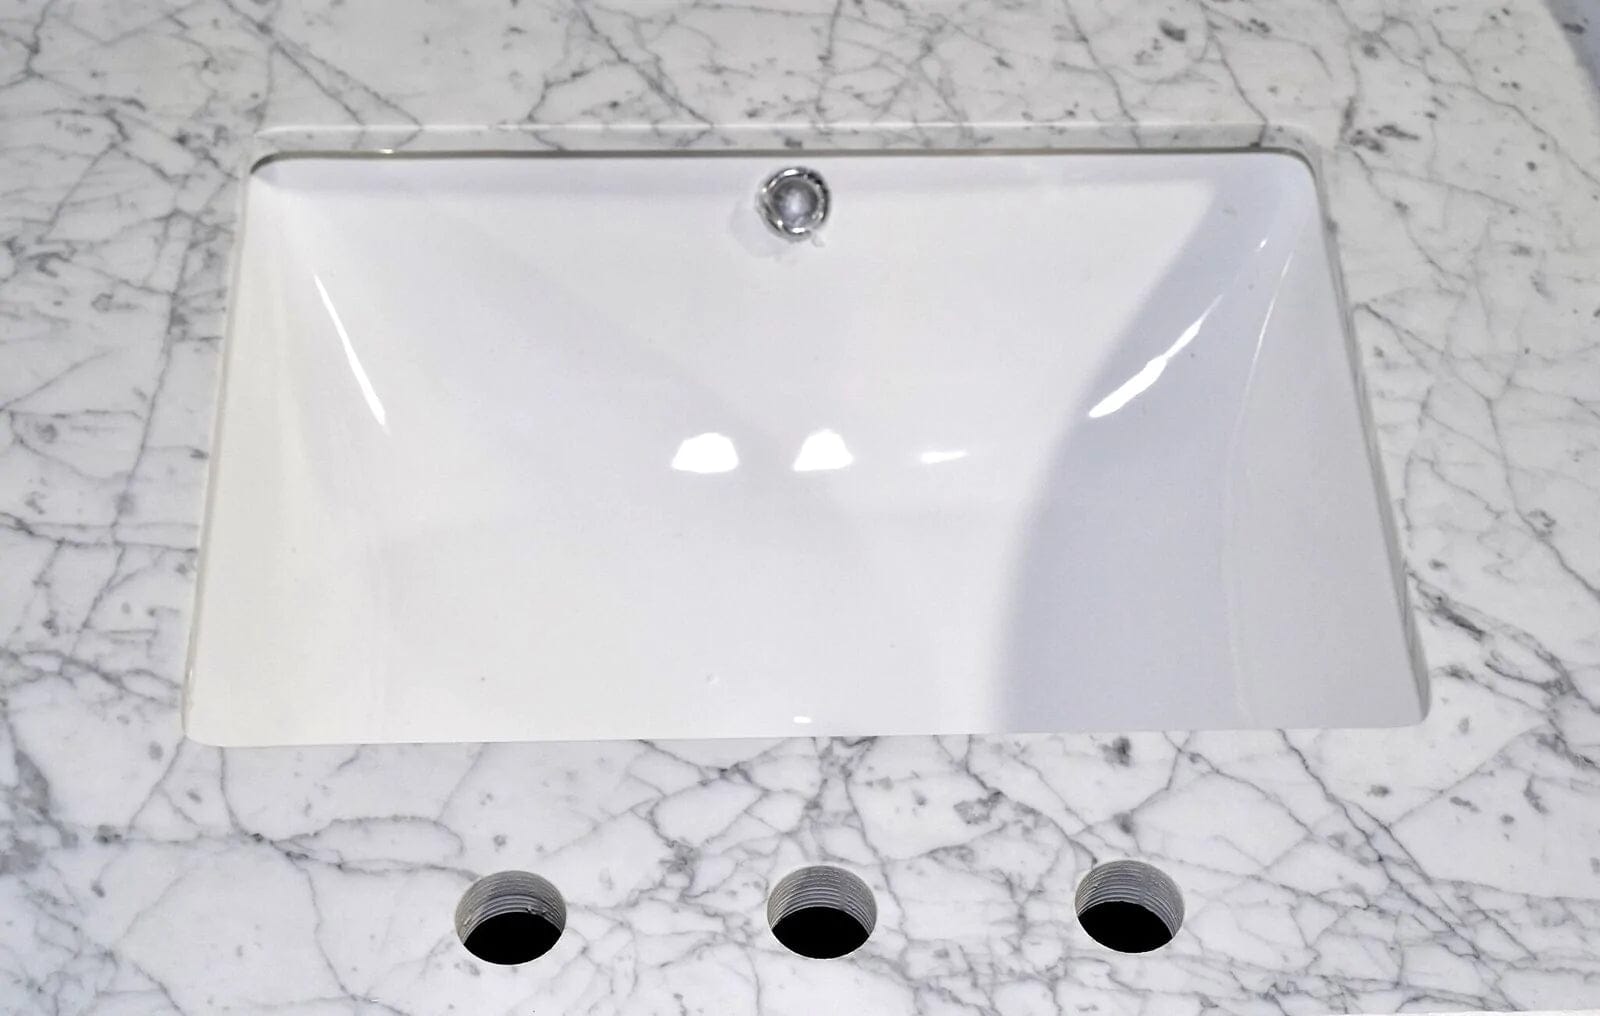 48 in. Single Sink Bathroom Vanity Set in White,Carrara Marble Stone Top - Decohub Home